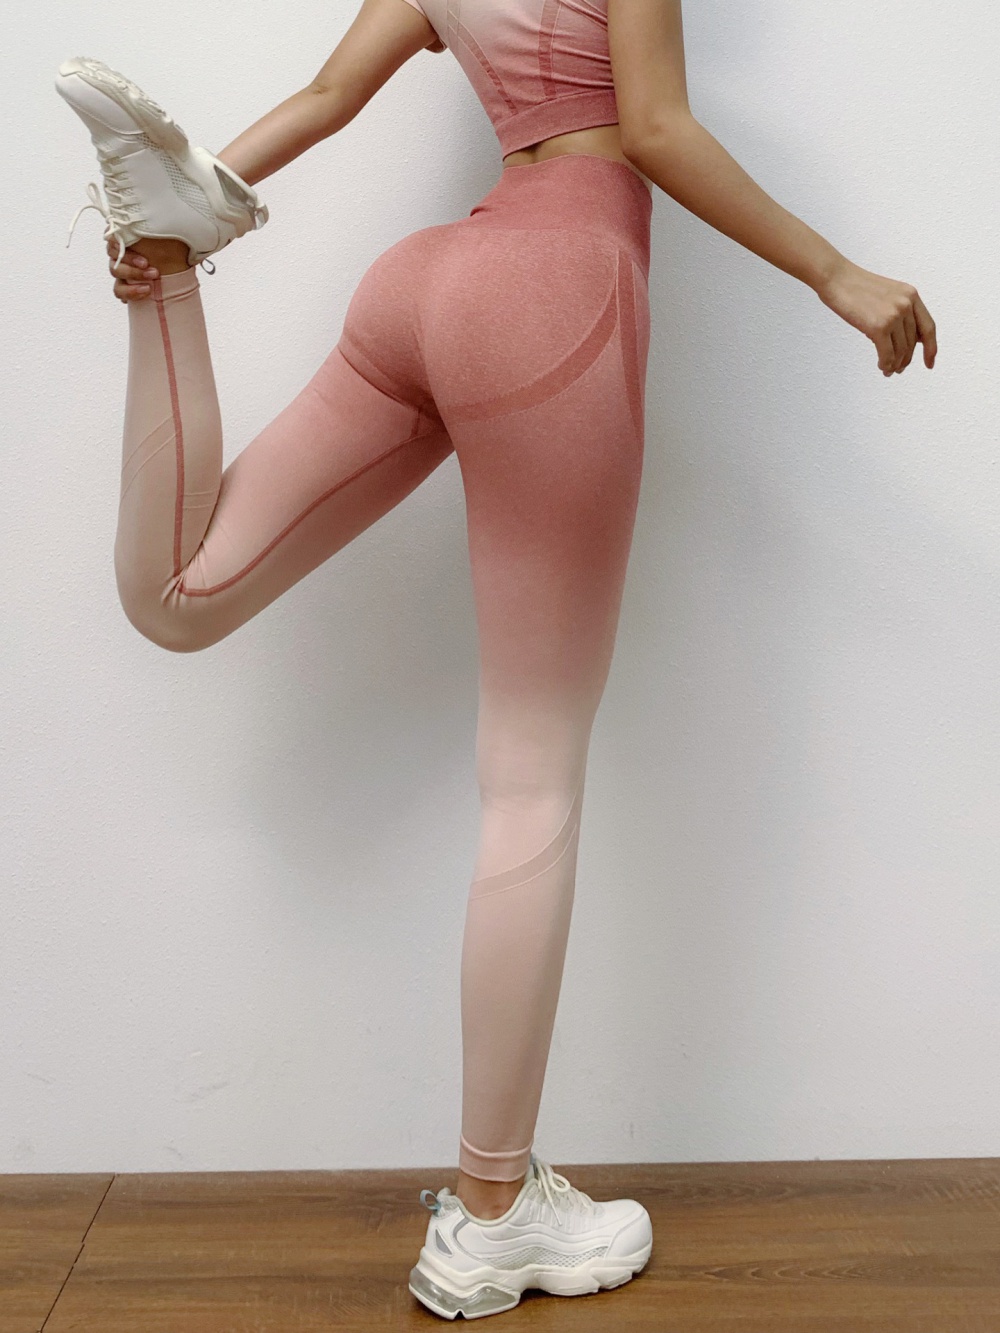 Tight gradient yoga pants hip raise pants for women